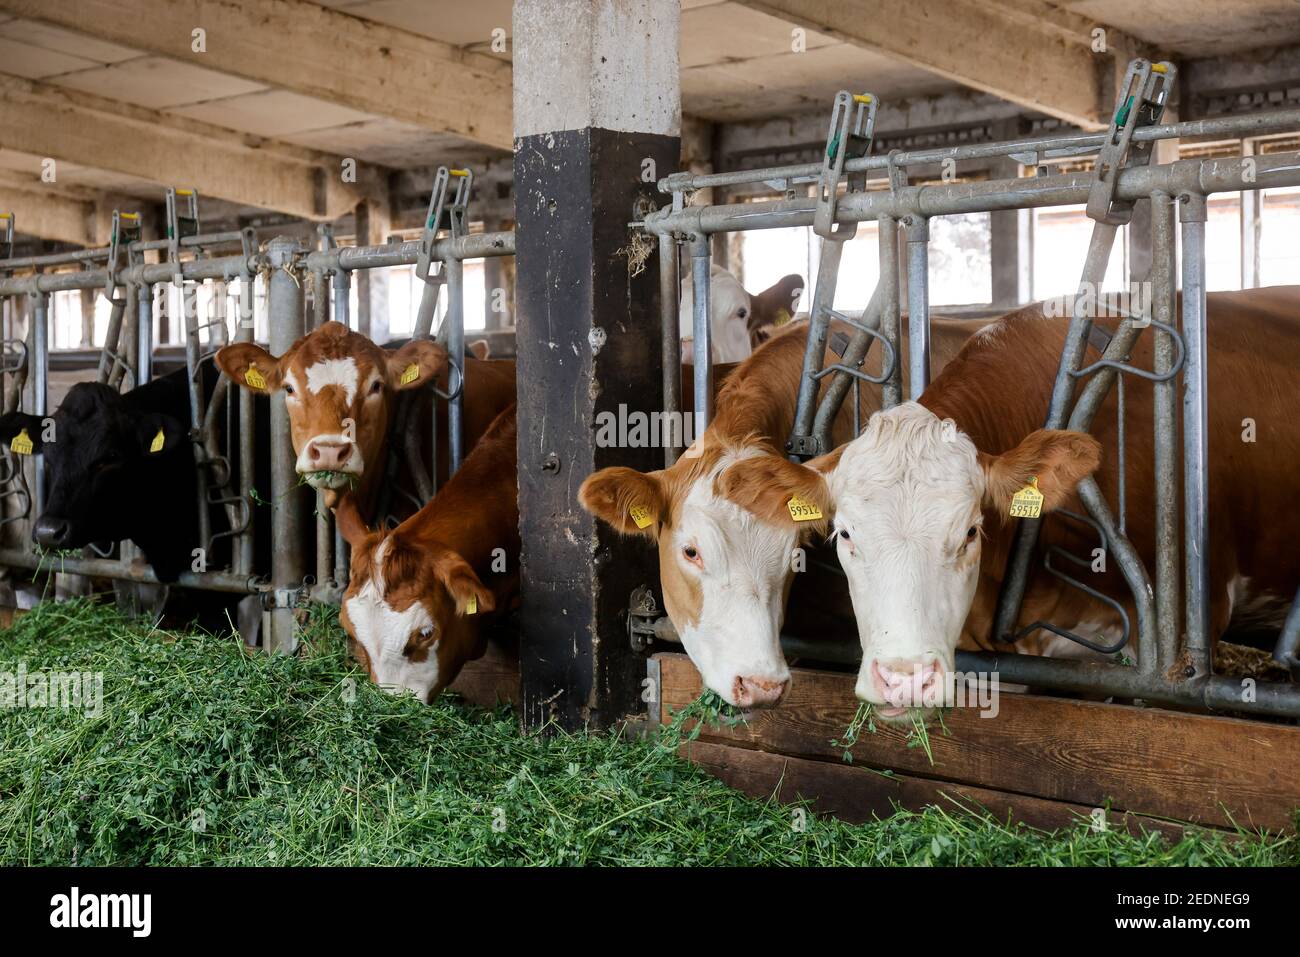 17.08.2020, , Saxe, Allemagne - bétail manger de l'herbe fraîche dans l'écurie, les animaux sont gardés sur la paille, avec des conditions d'espace généreux au-dessus de stan organique Banque D'Images